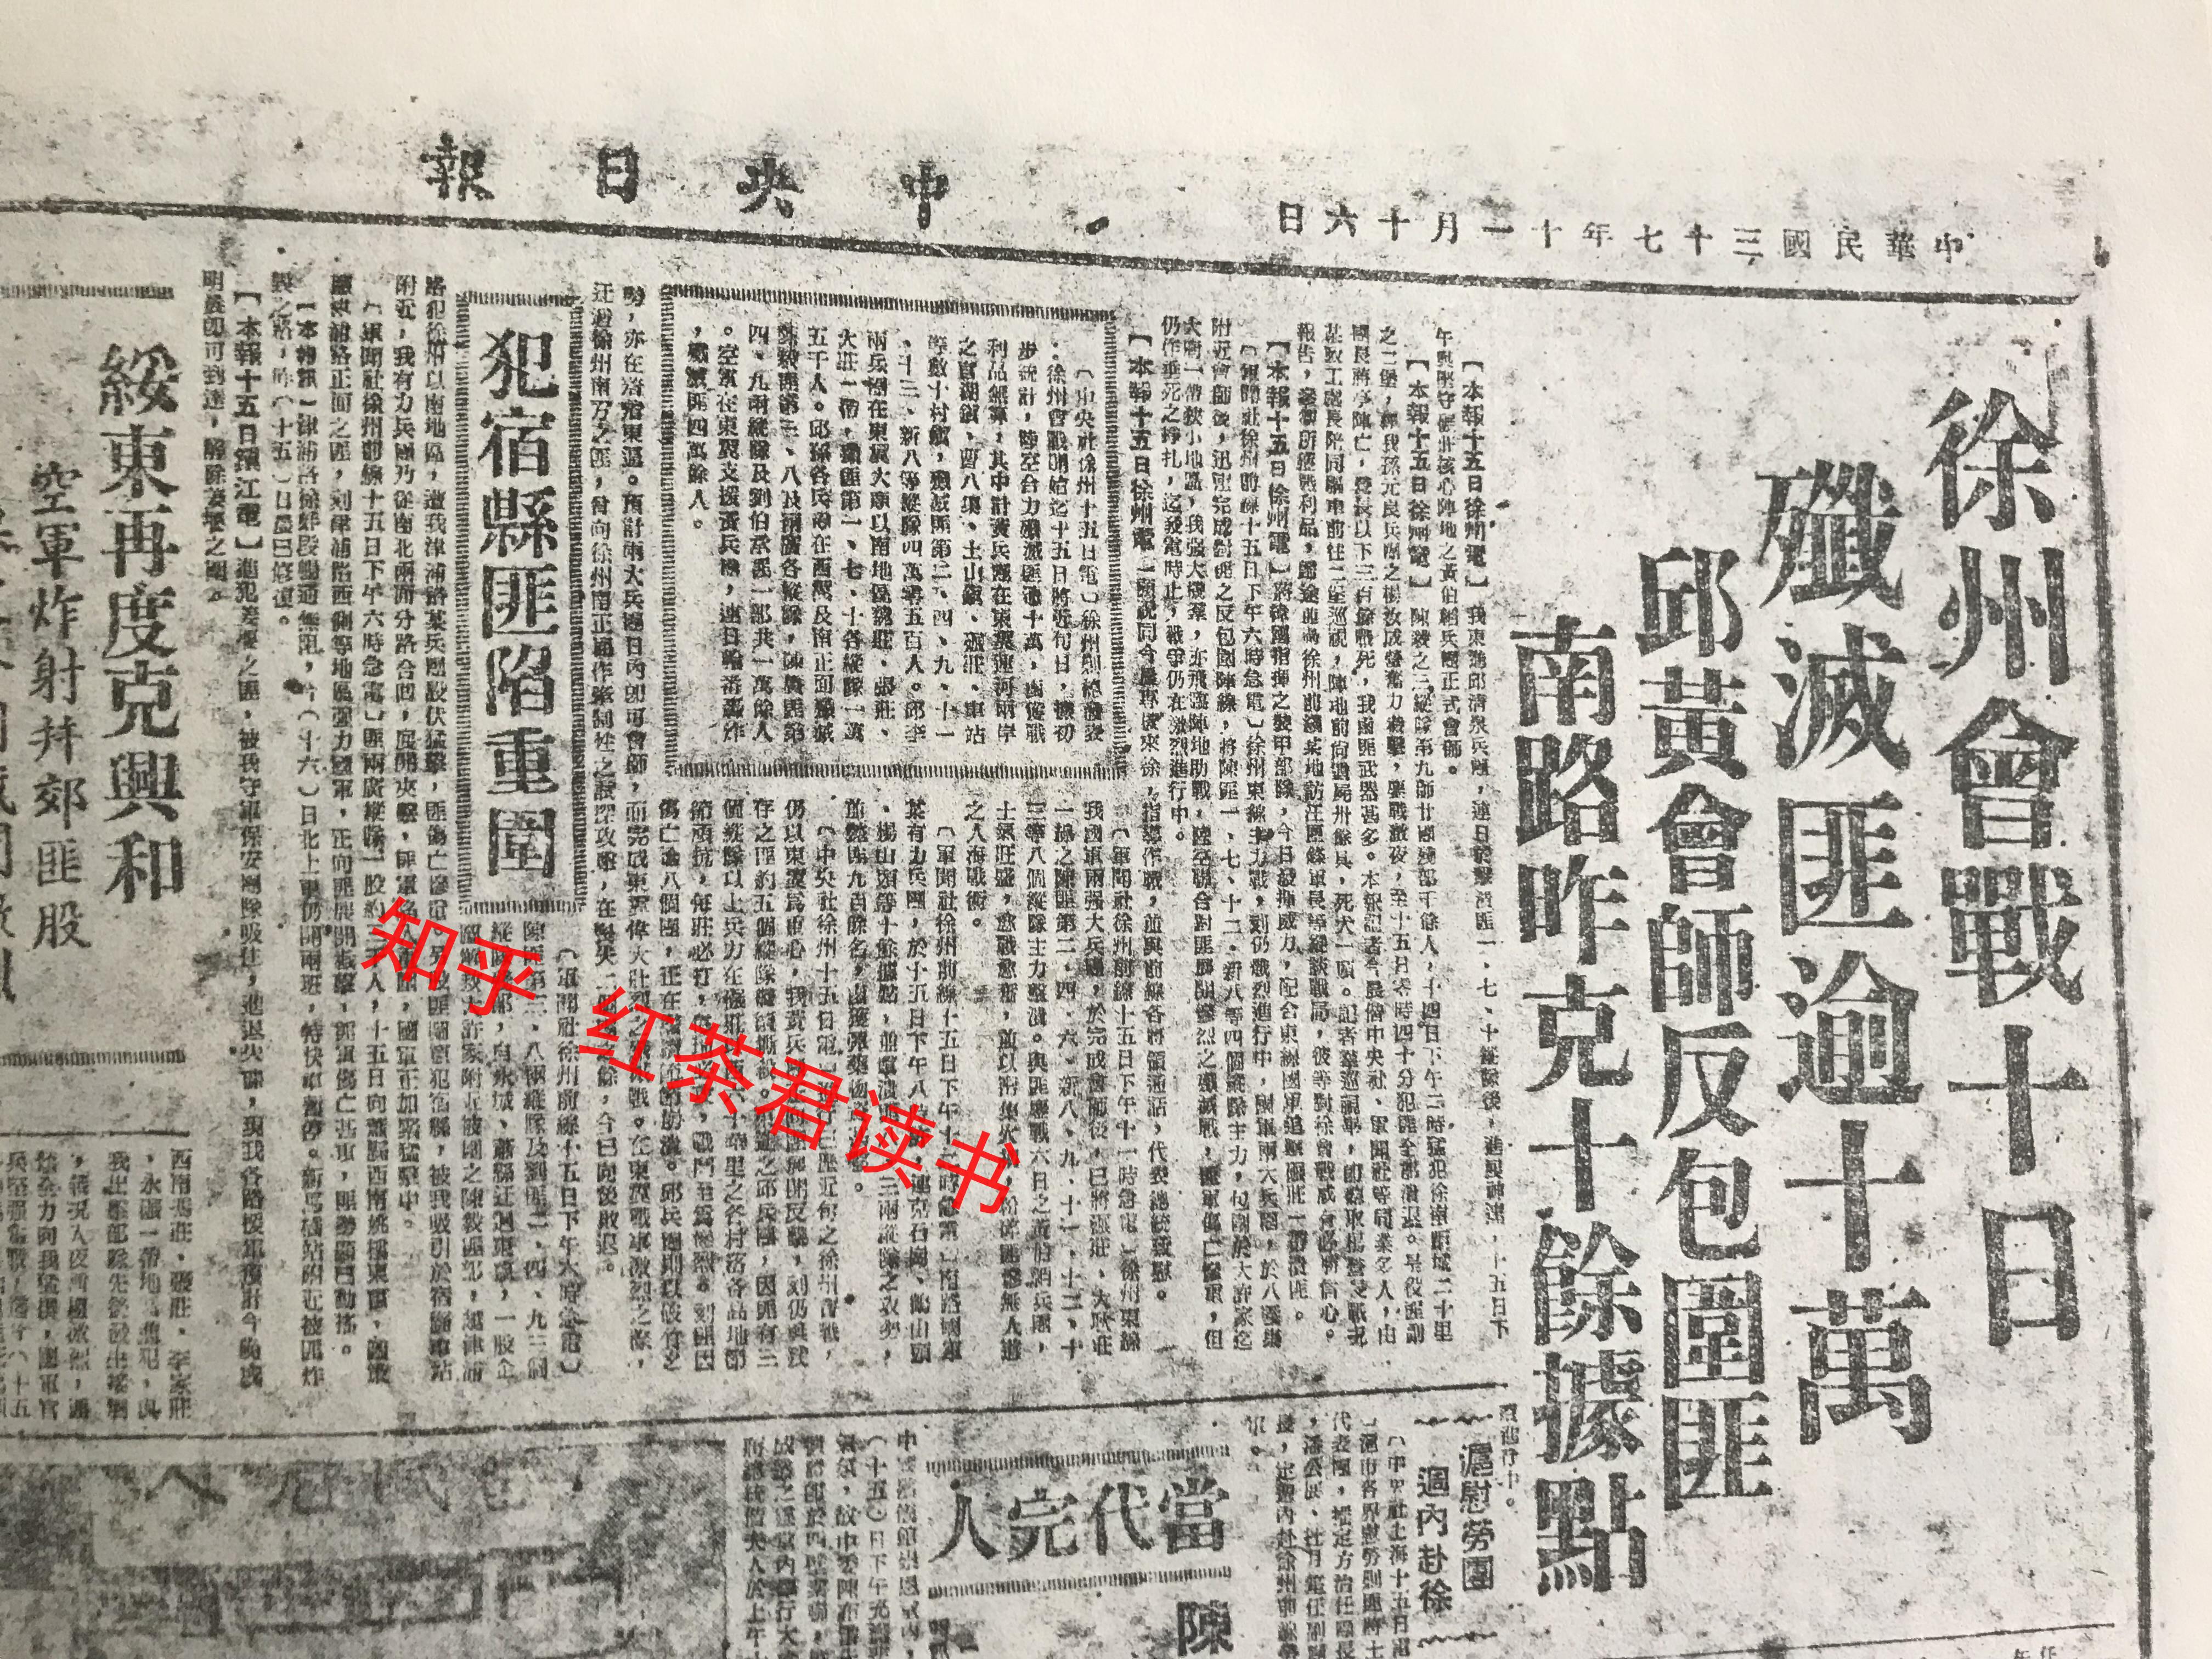 难得一见的民国报刊史料:国民党机关报《中央日报》对辽沈,淮海战役的